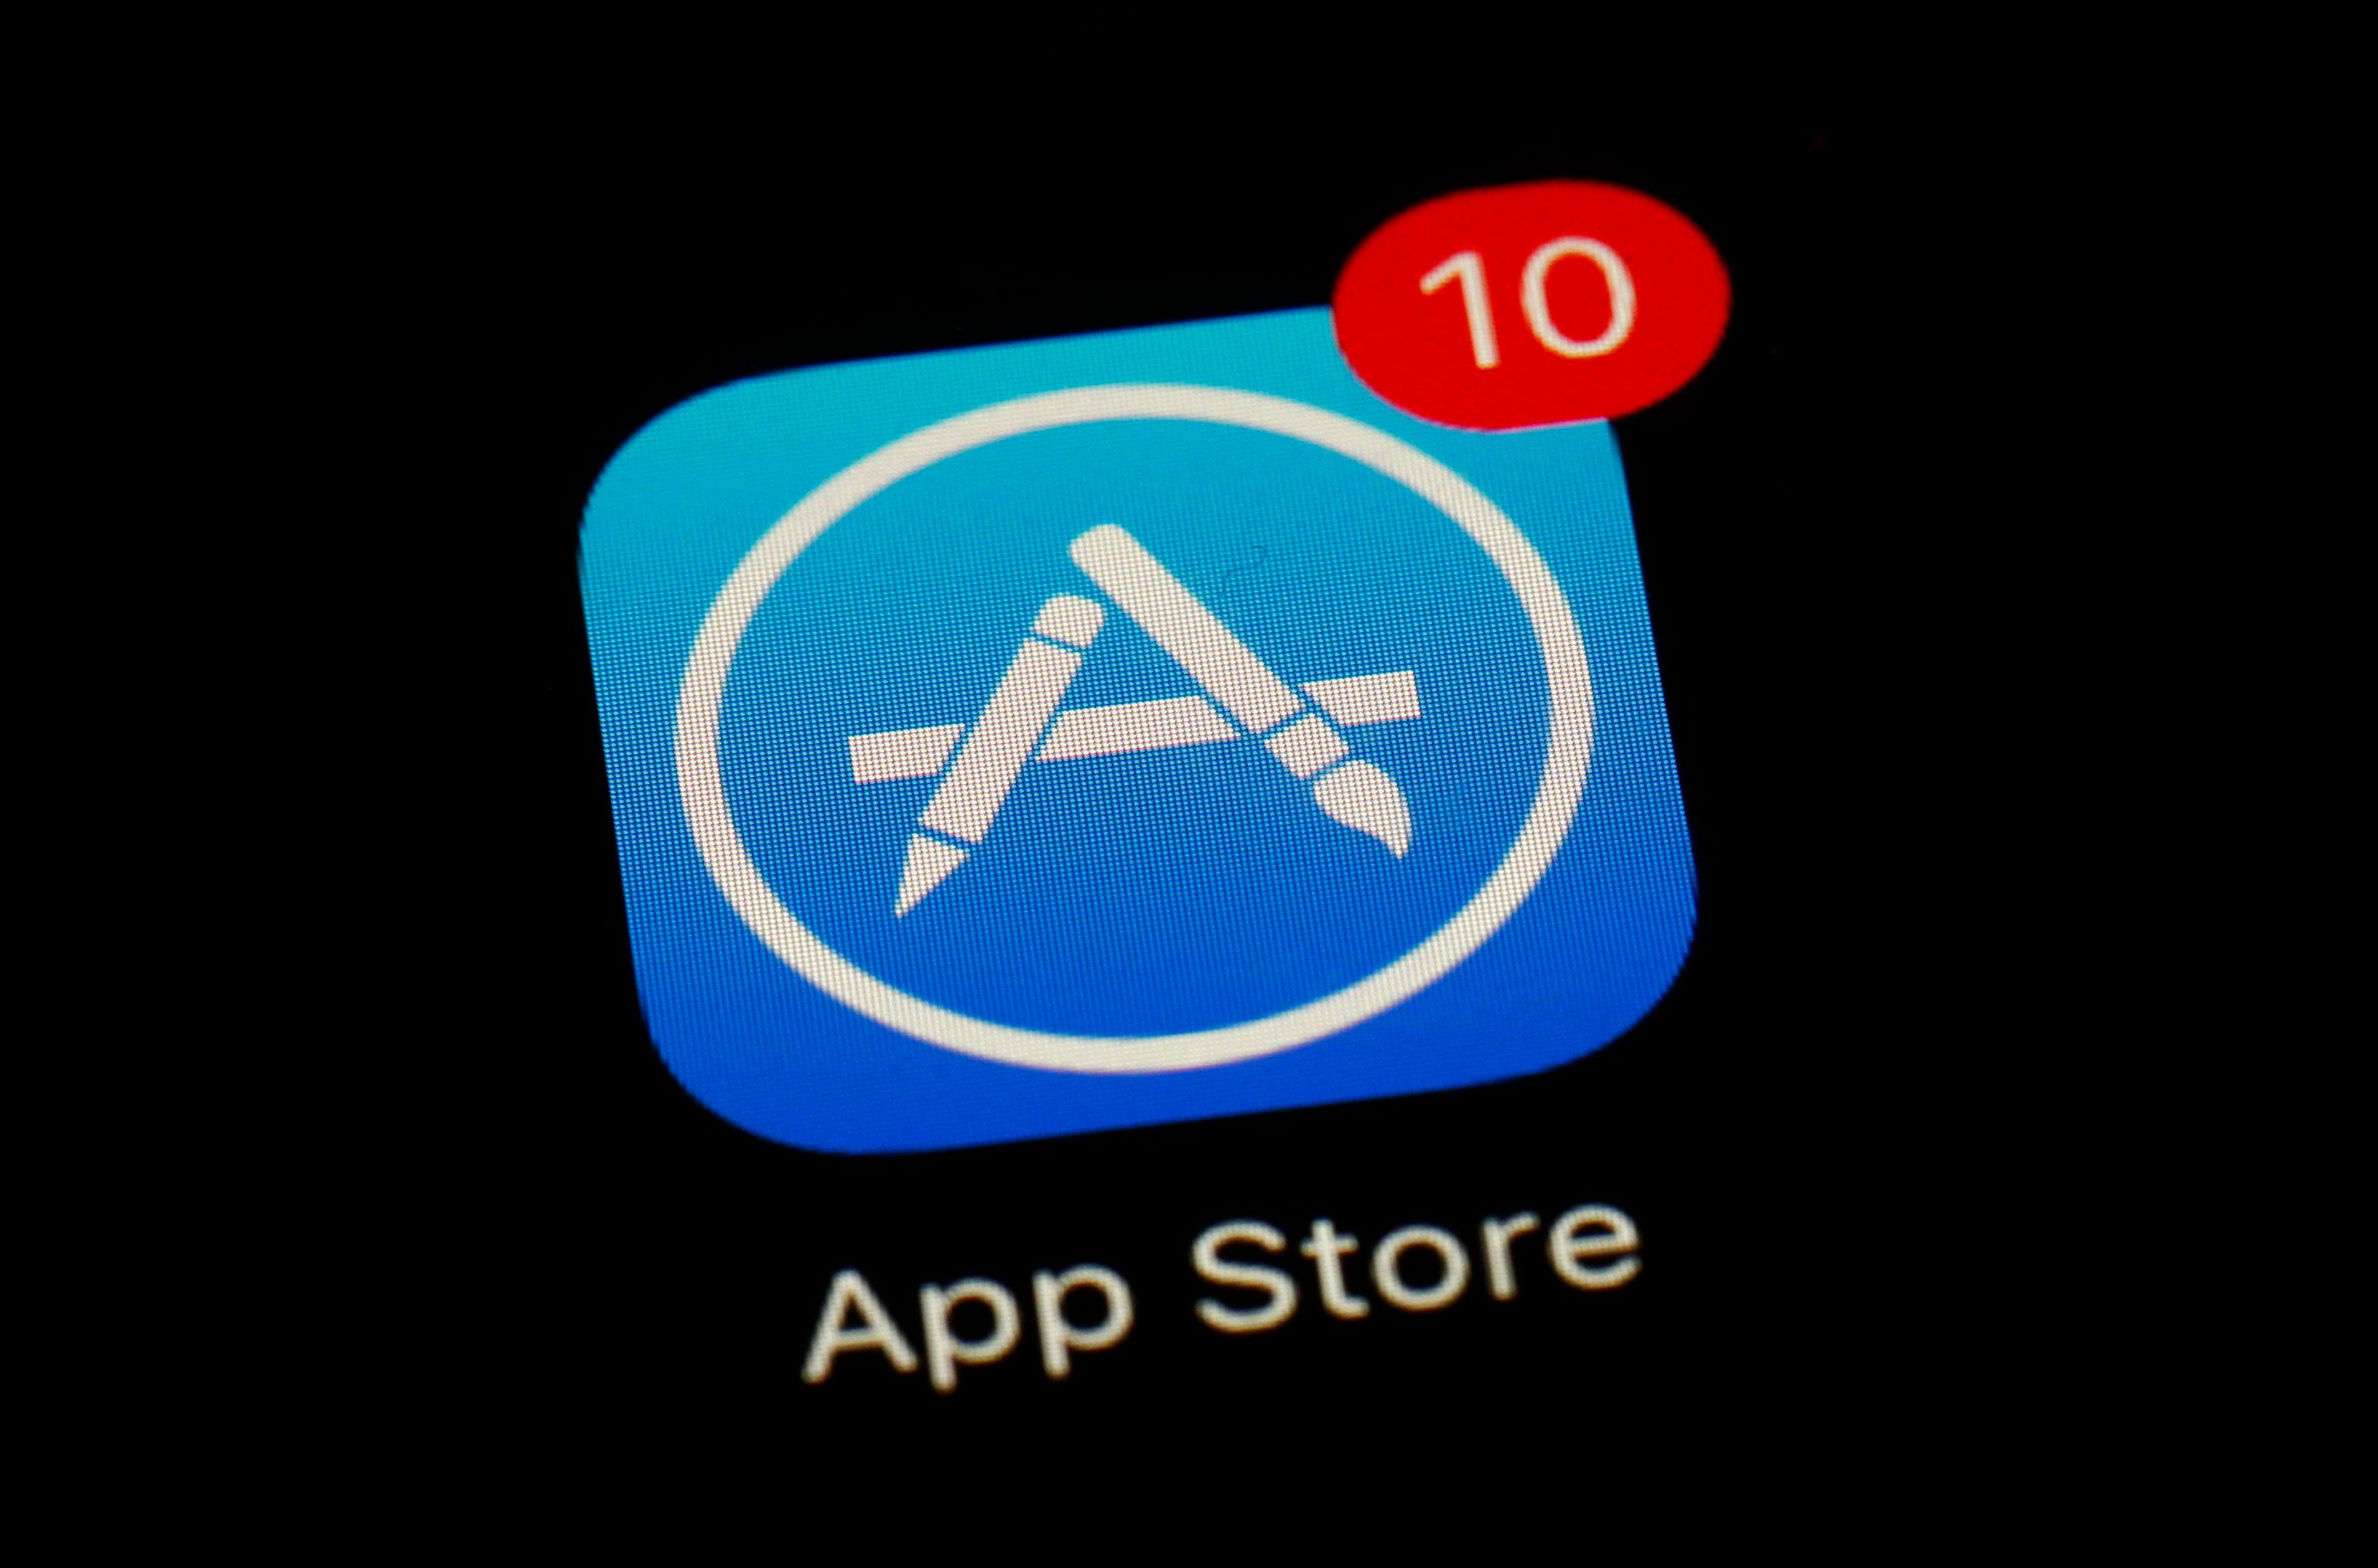 Una de las características más destacadas de la App Store es su sistema de revisión de aplicaciones, que garantiza que todas las apps disponibles cumplan con los más altos estándares de calidad y seguridad. (Foto AP/Patrick Semansky, Archivo)